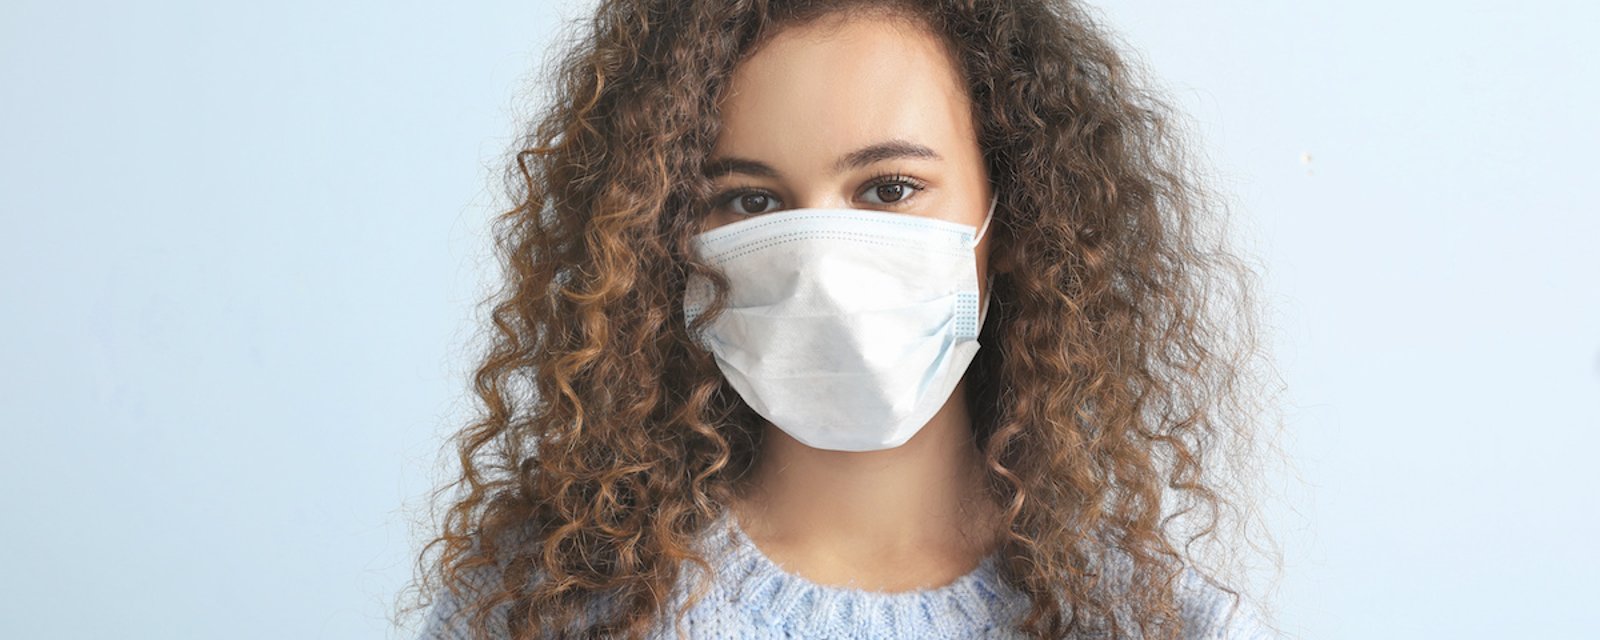 COVID-19: Selon l’OMS, les masques en tissu sont encore aussi efficaces